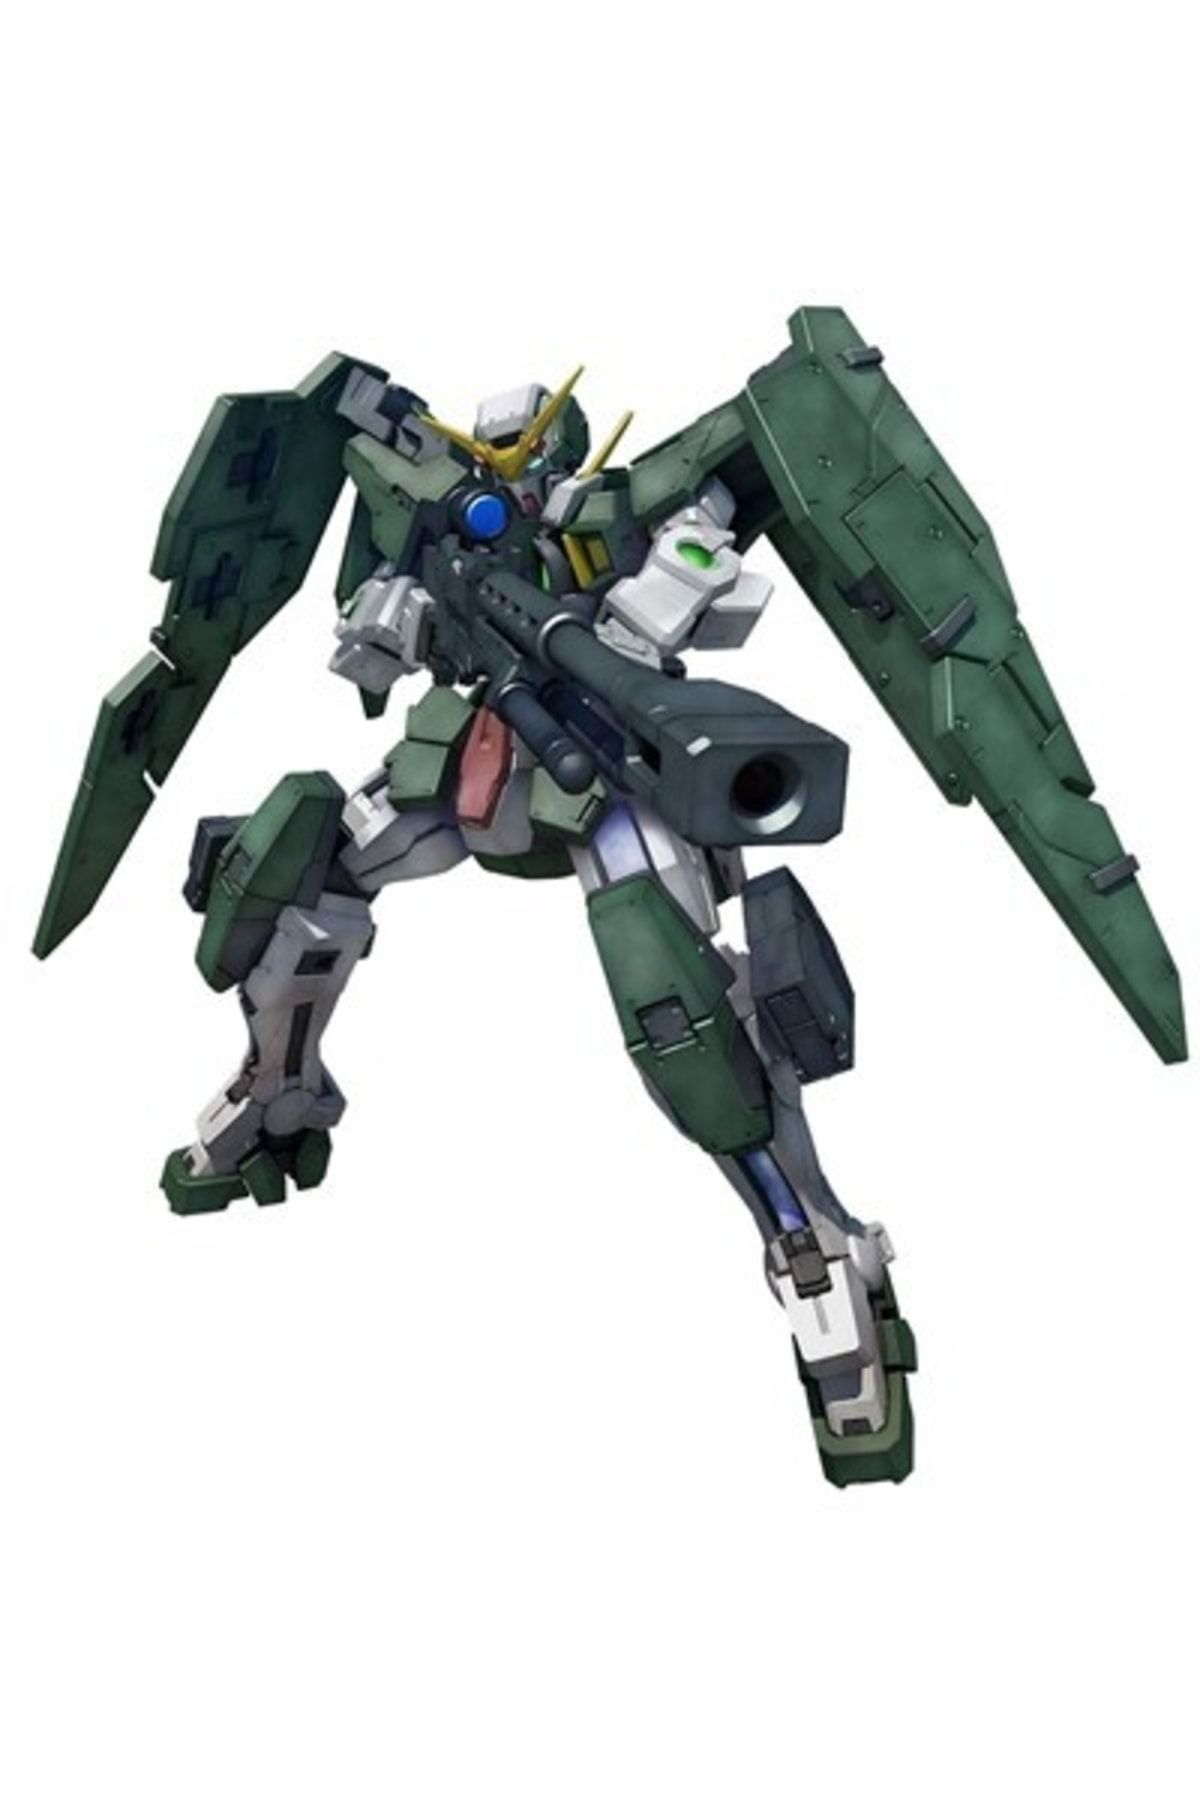 BANDAI Hobby Mg 1:100 Ölçekli Gundam Dynames Aksiyon Figürü (yurt Dışından)